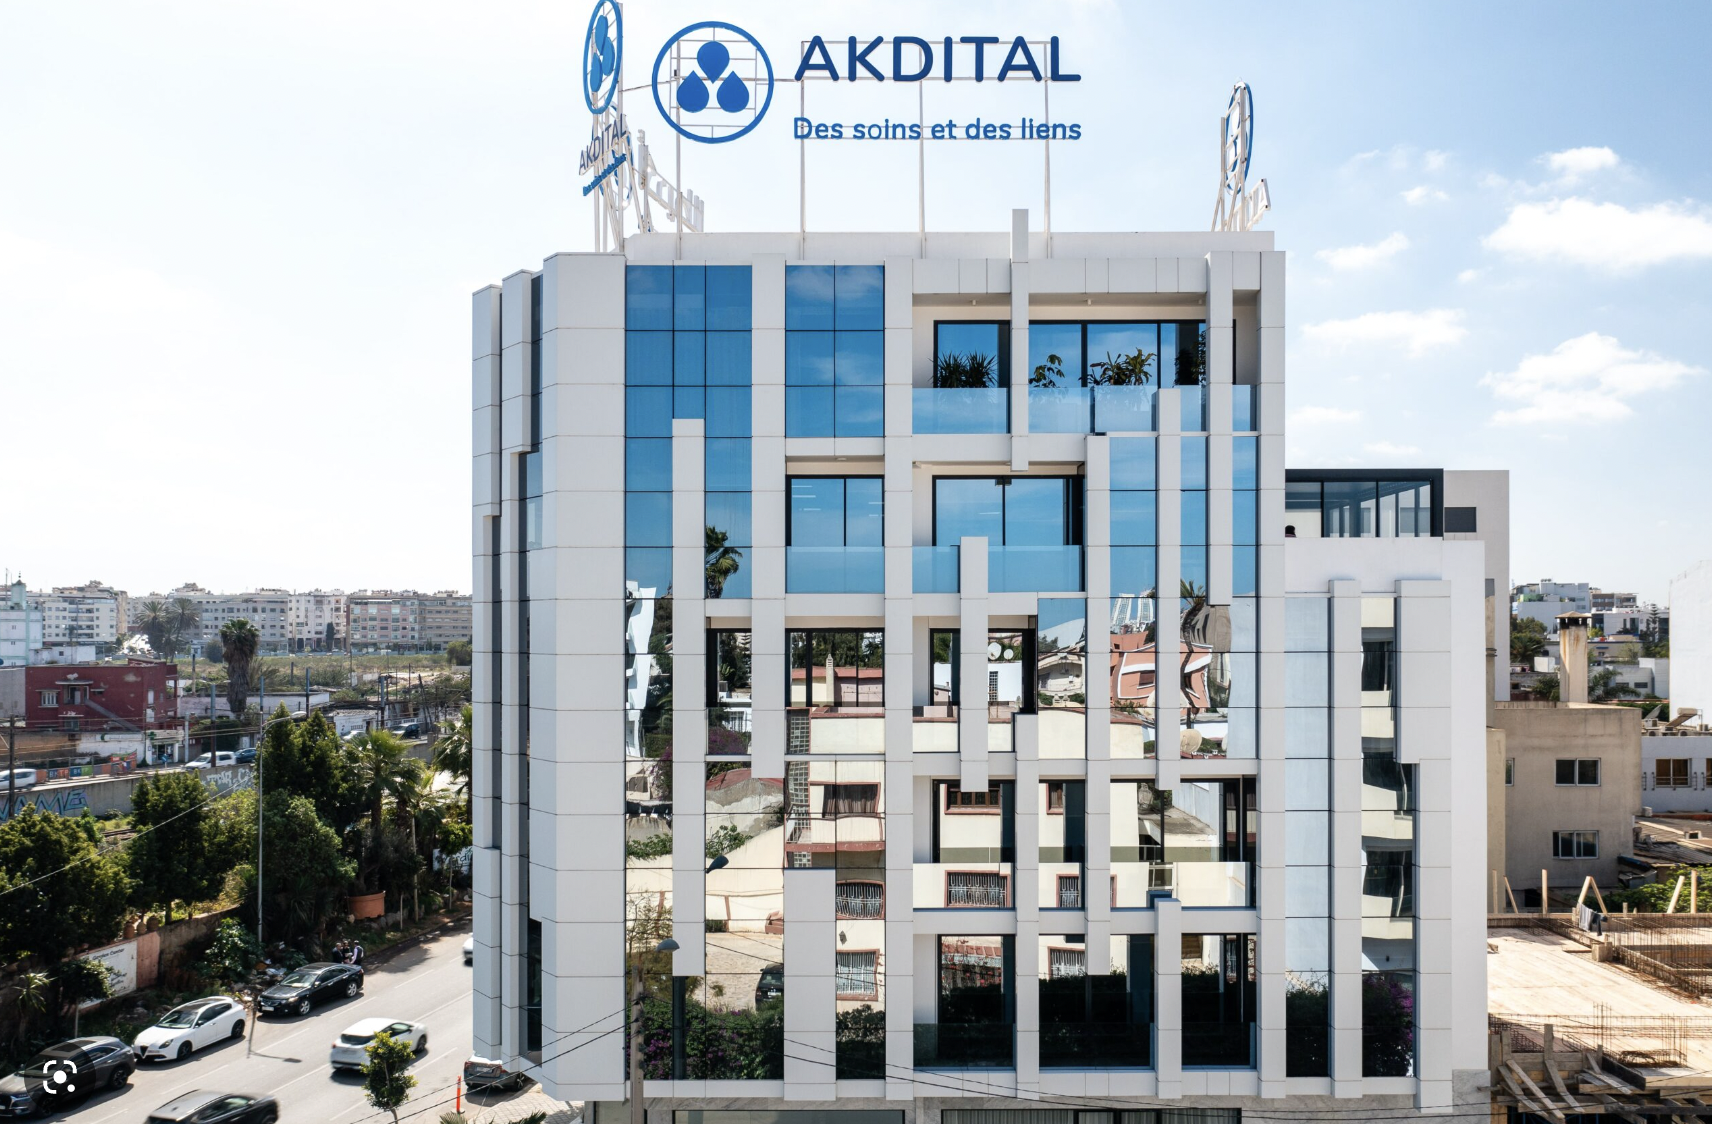 Akdital : A quoi servira l’argent de l’augmentation de capital